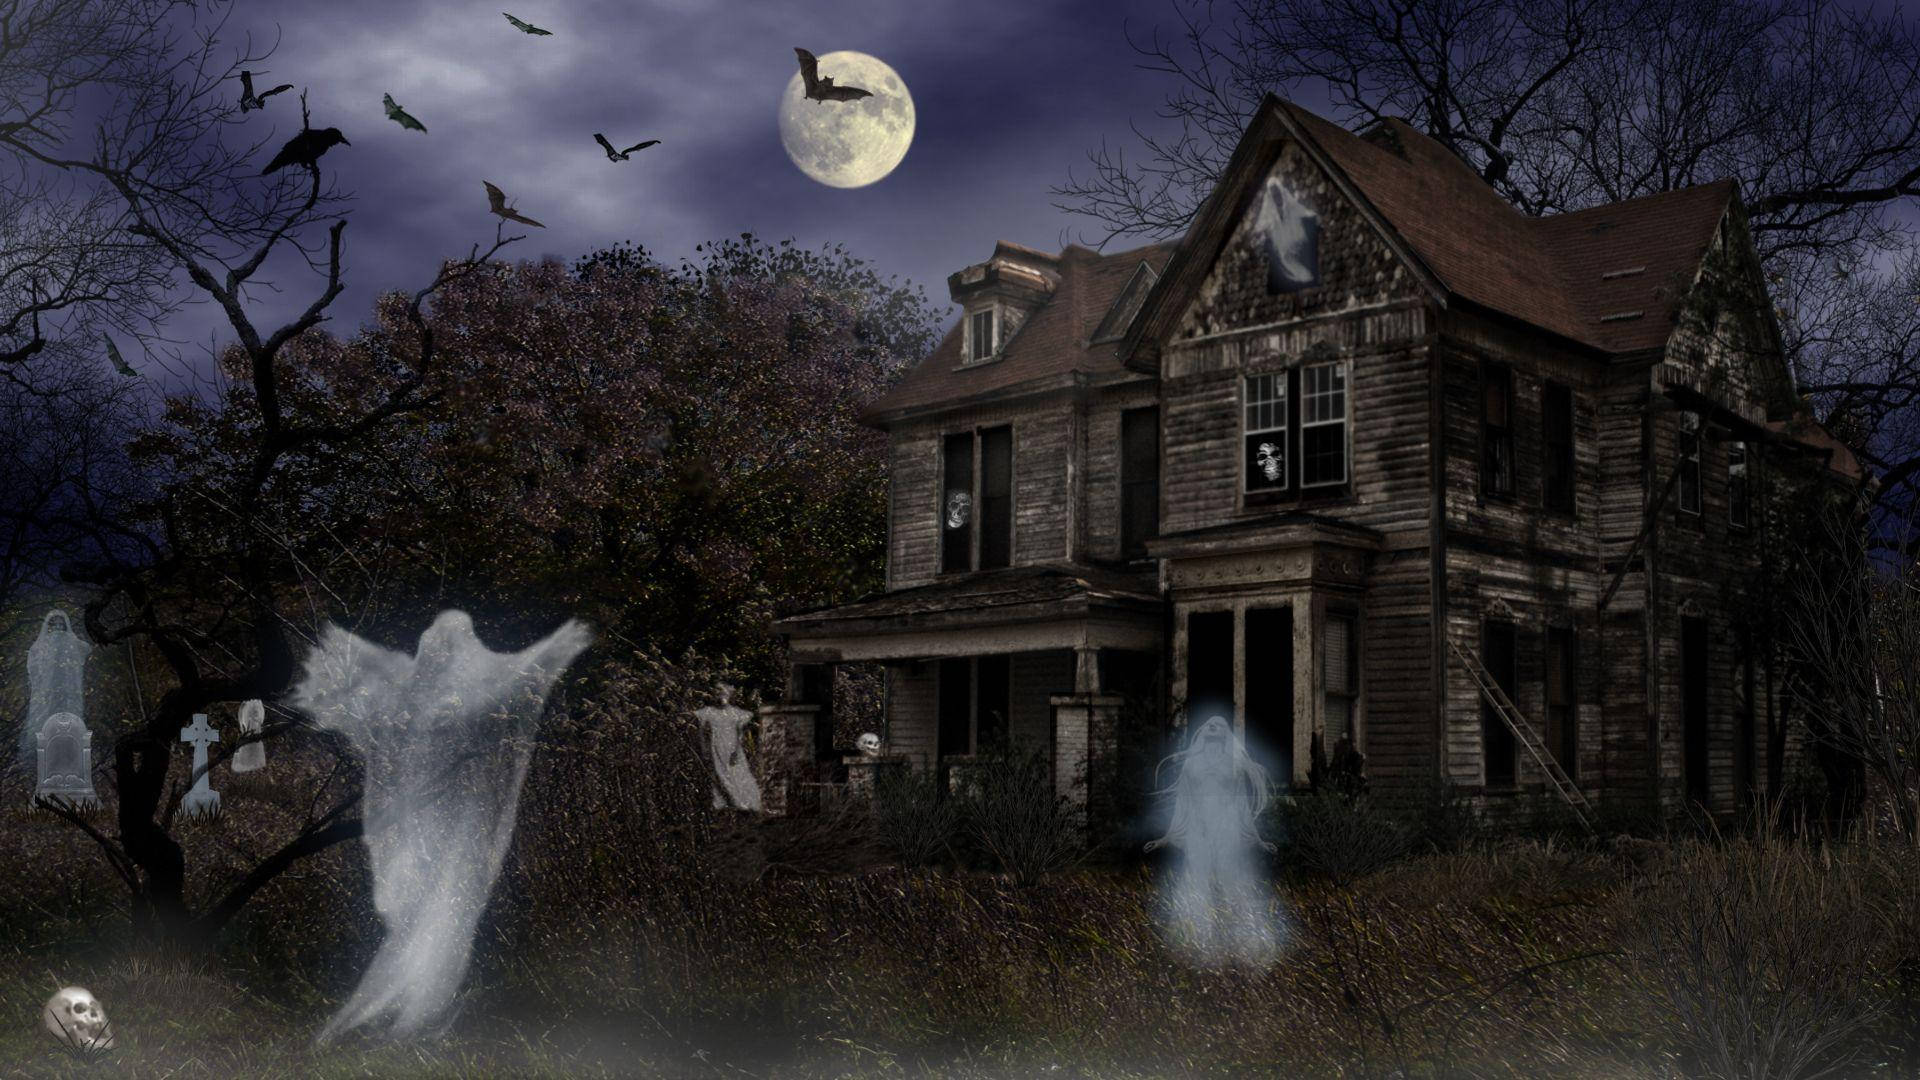 Et mystisk og skummelt Hauntet Hus på Halloweennat. Wallpaper